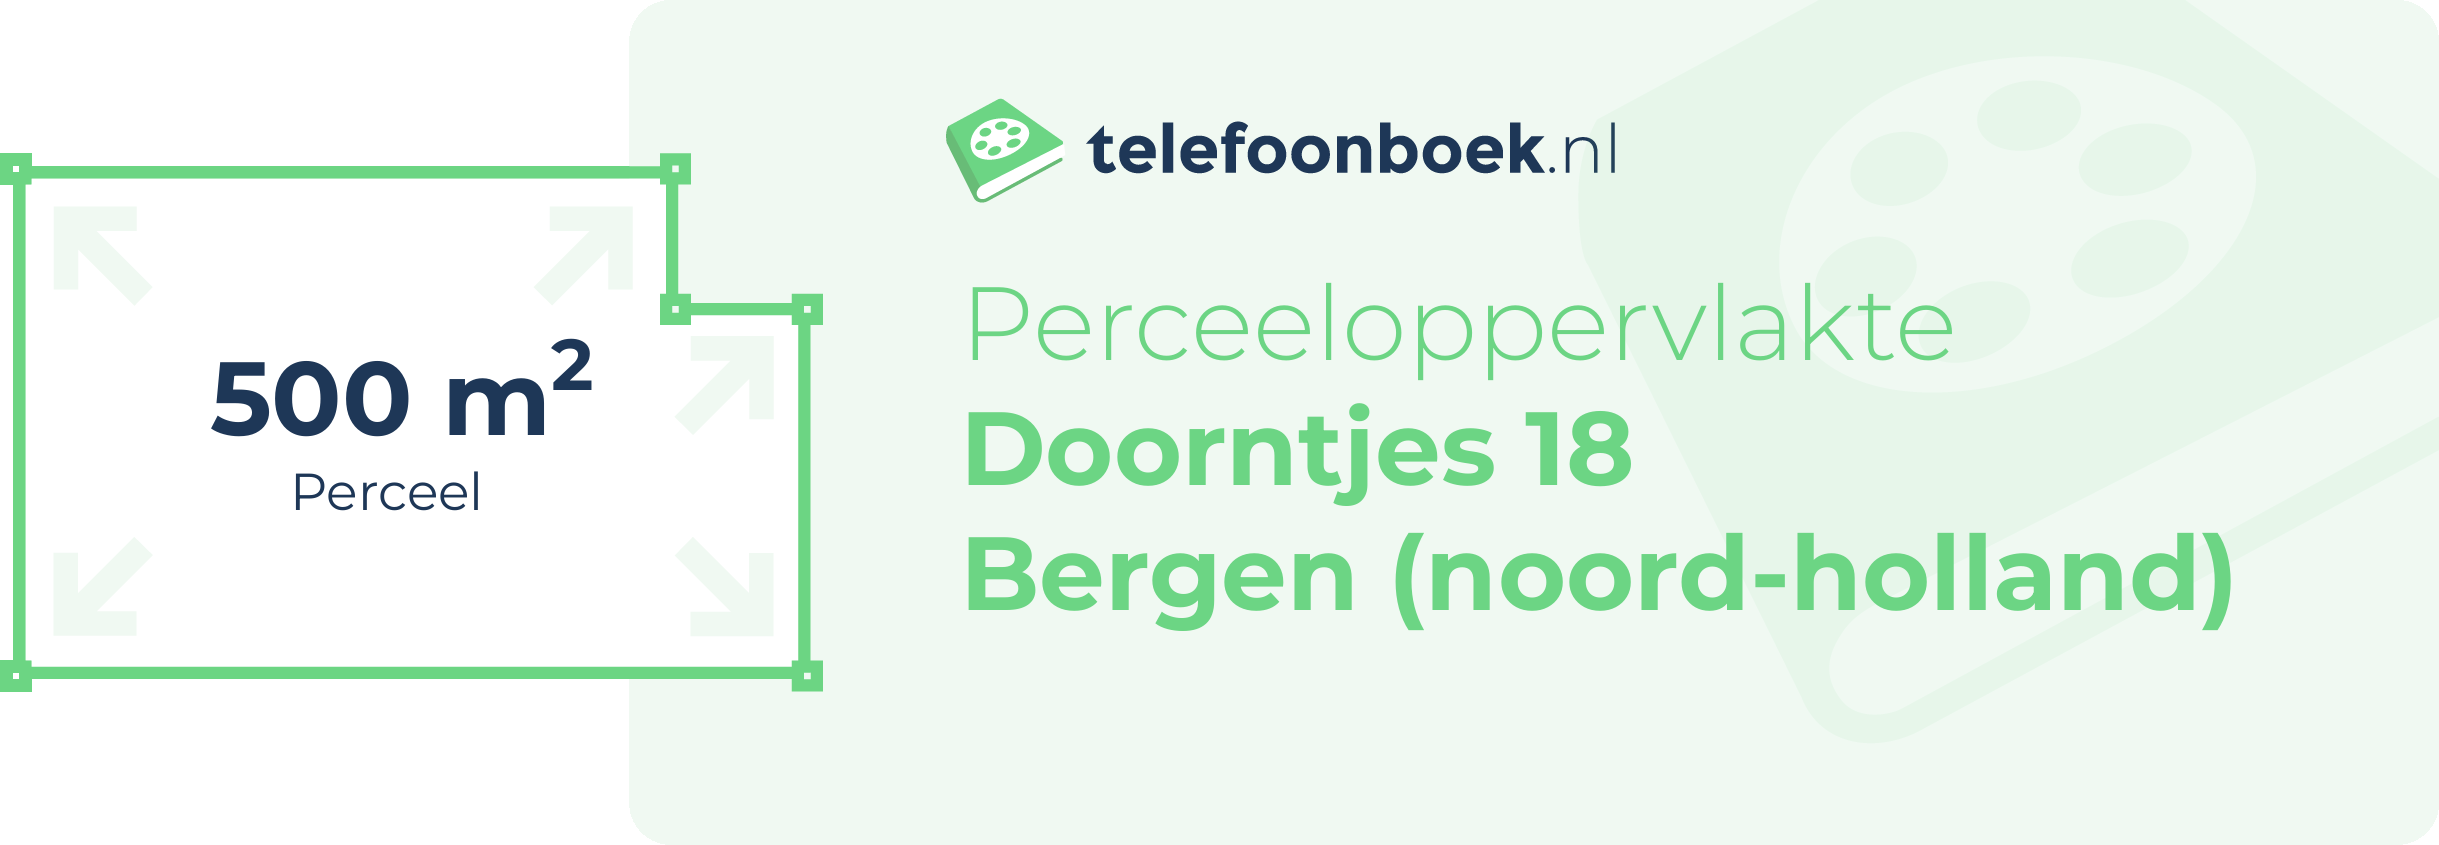 Perceeloppervlakte Doorntjes 18 Bergen (Noord-Holland)